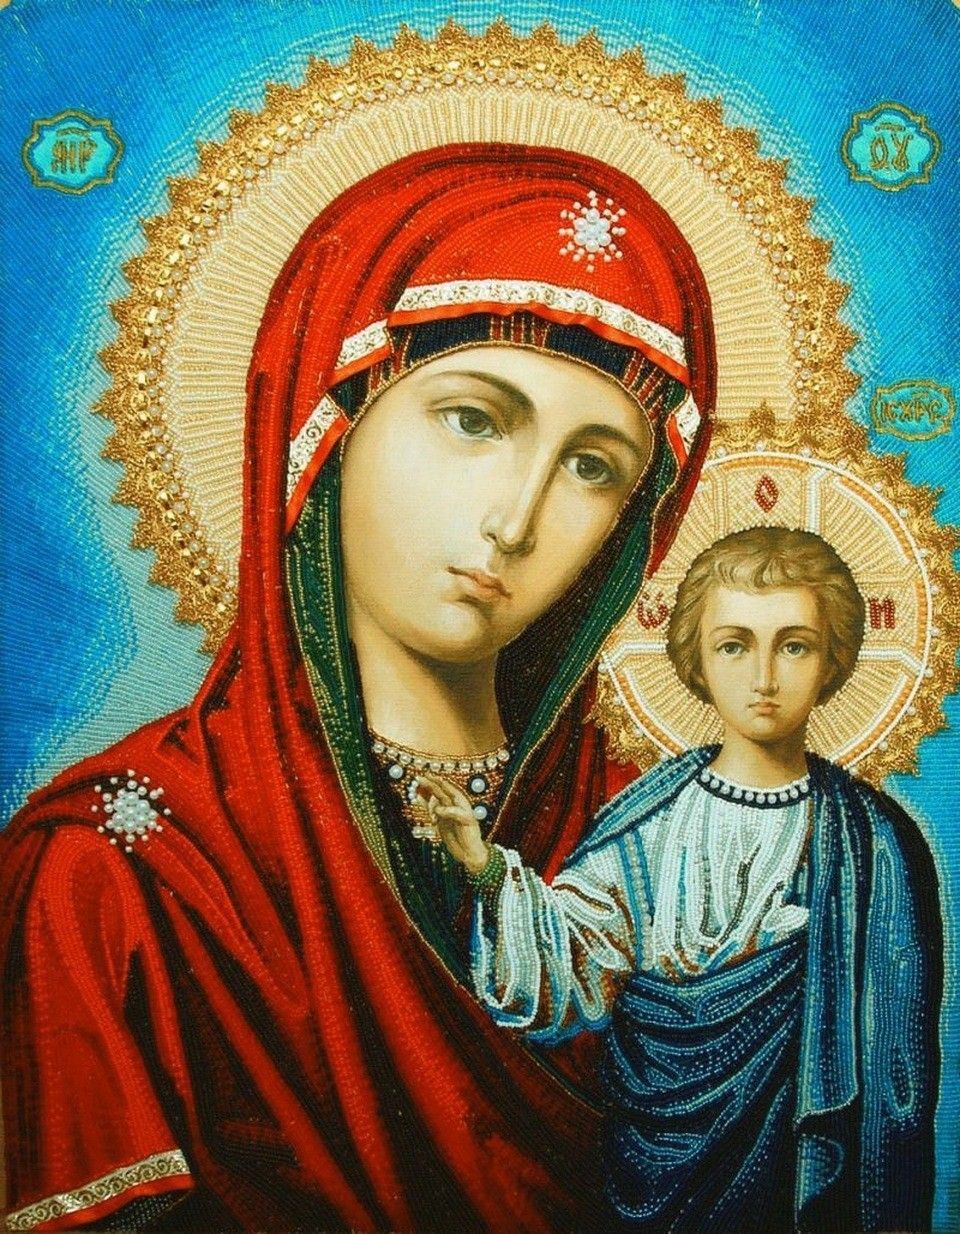 Обретение Казанской иконы Божией Матери произошло 8 июля 1579 года в Казани, через четверть века после покорения царём Иоанном Грозным Казанского ханства